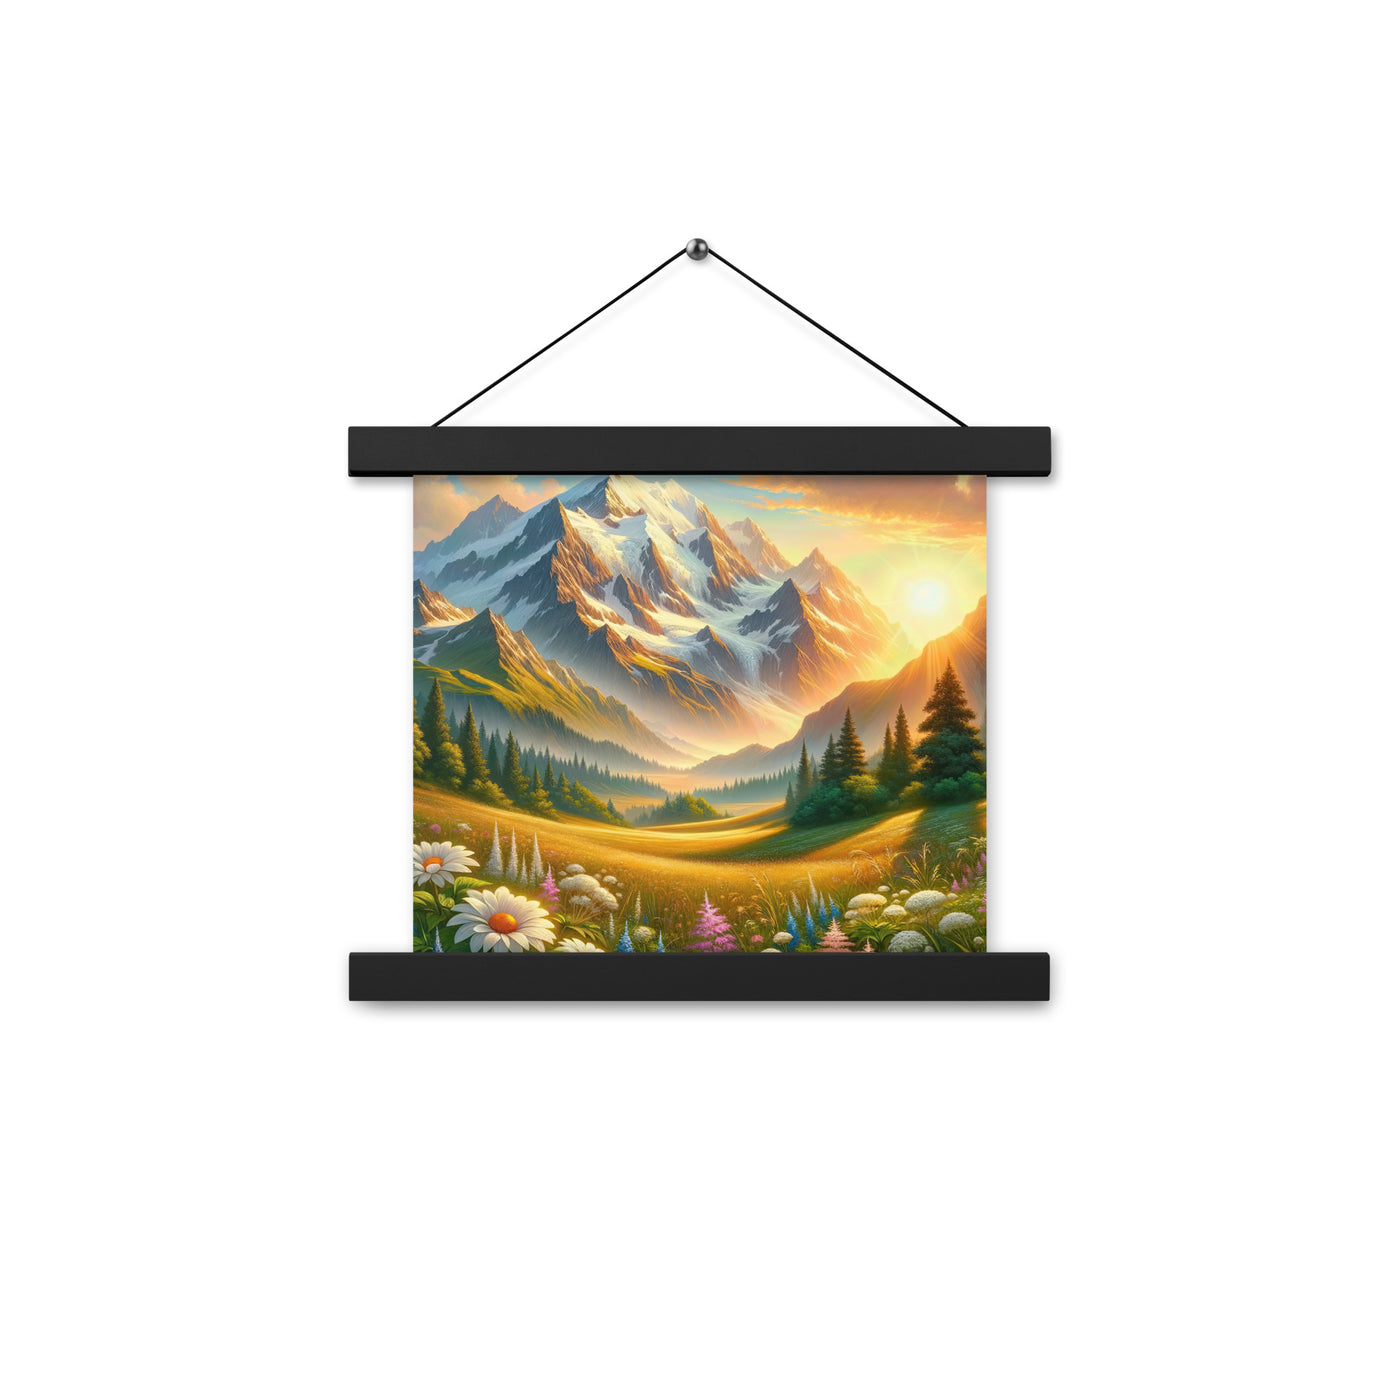 Heitere Alpenschönheit: Schneeberge und Wildblumenwiesen - Premium Poster mit Aufhängung berge xxx yyy zzz 25.4 x 25.4 cm